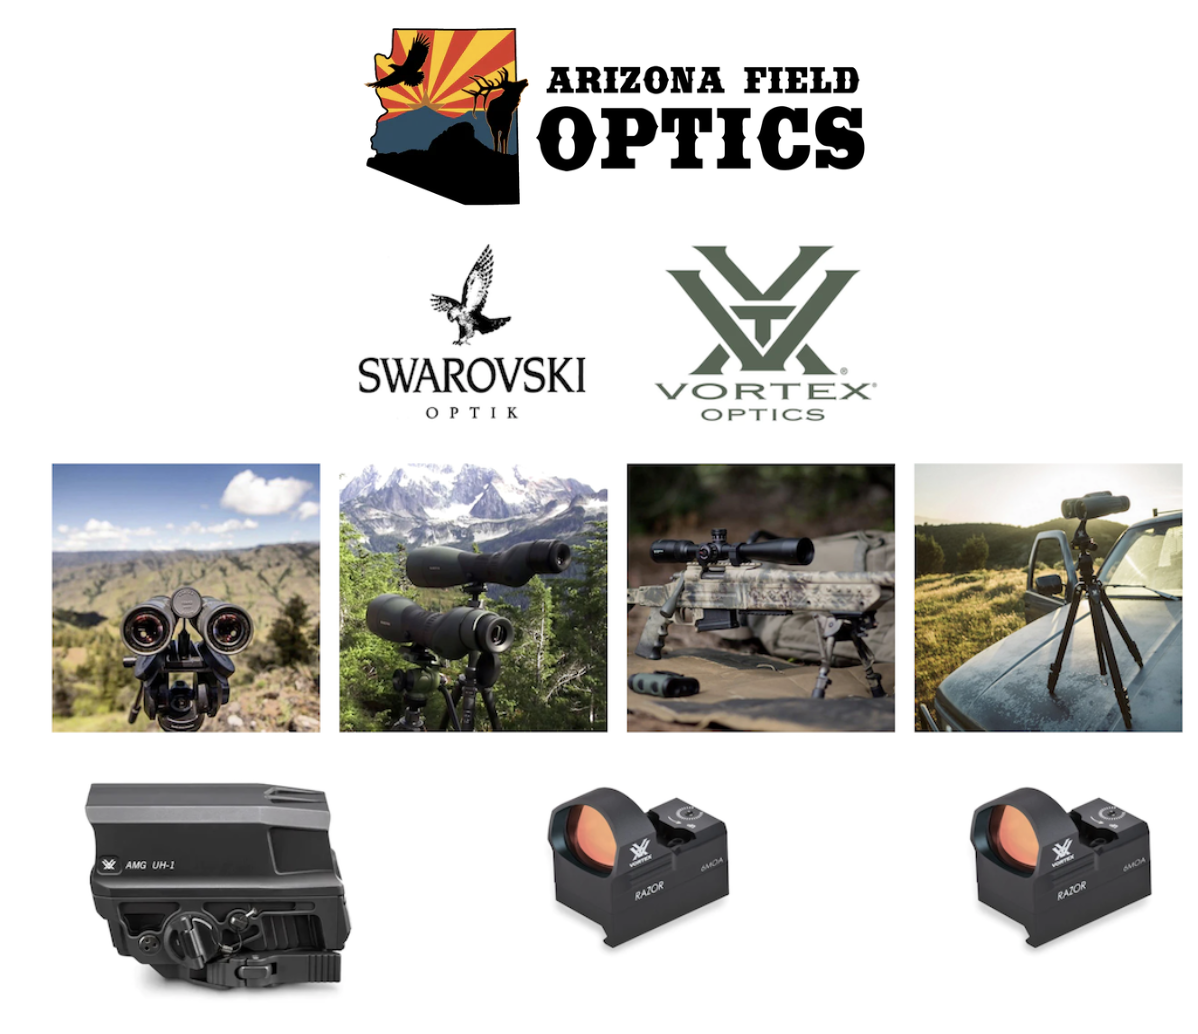 Arizona Field Optics at the Prescott Valley Outdoor Summit